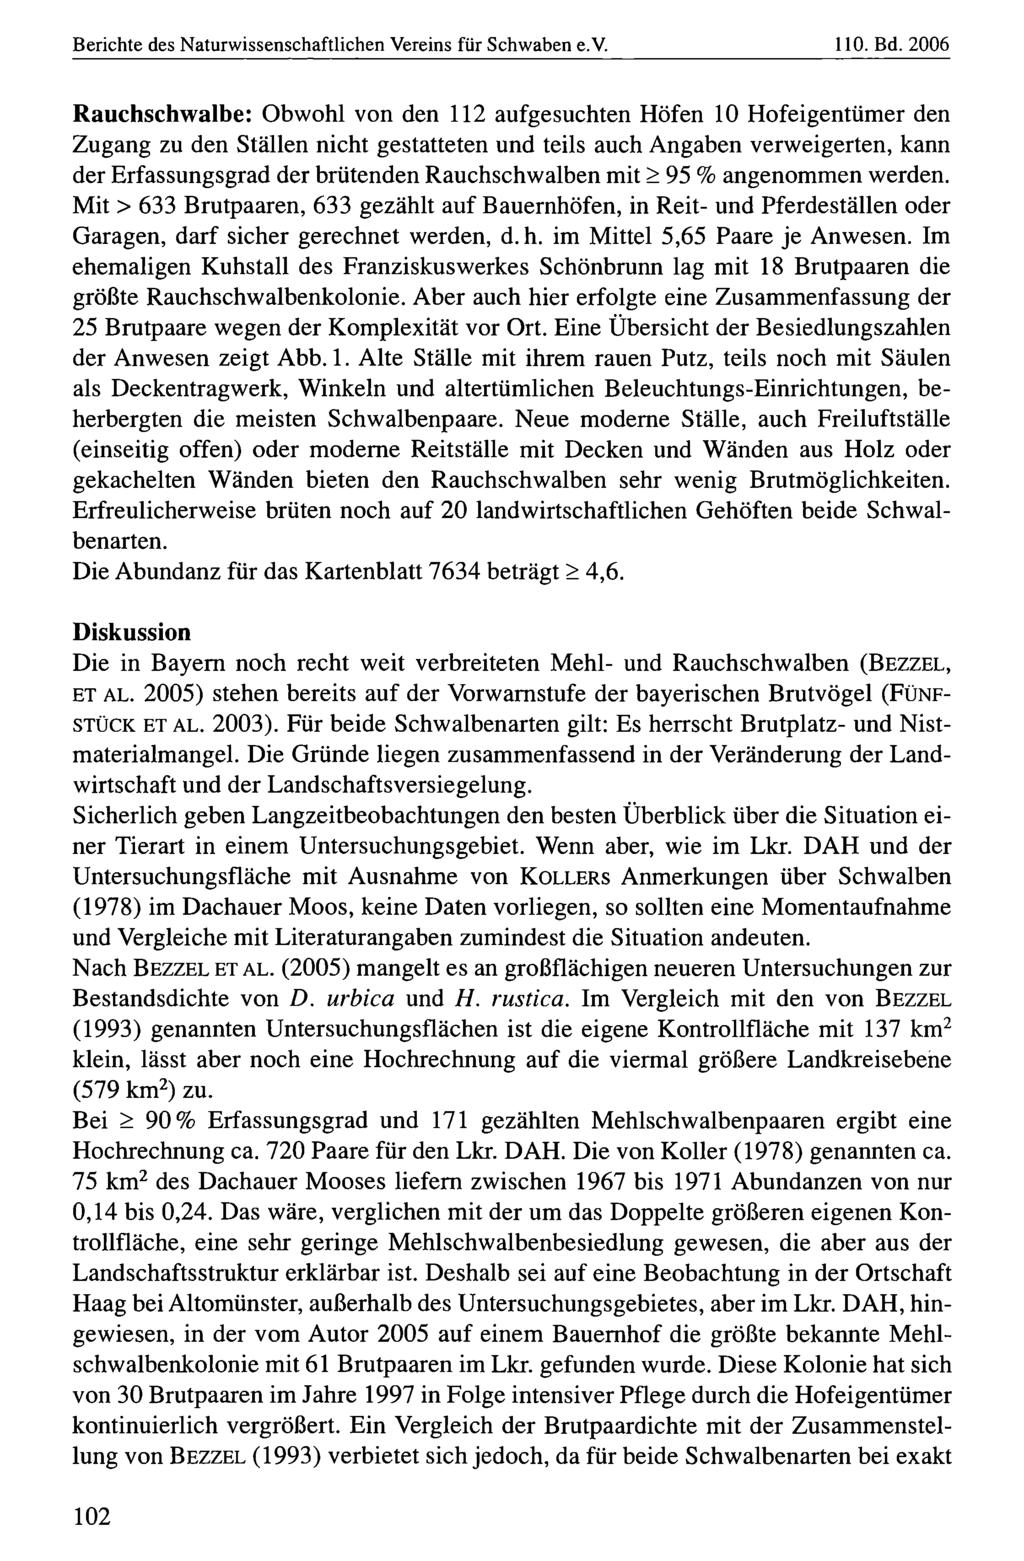 Berichte des Naturwissenschaftlichen Naturwissenschaftlicher Vereins für für Schwaben, download e.v. unter www.biologiezentrum.at 110. Bd.